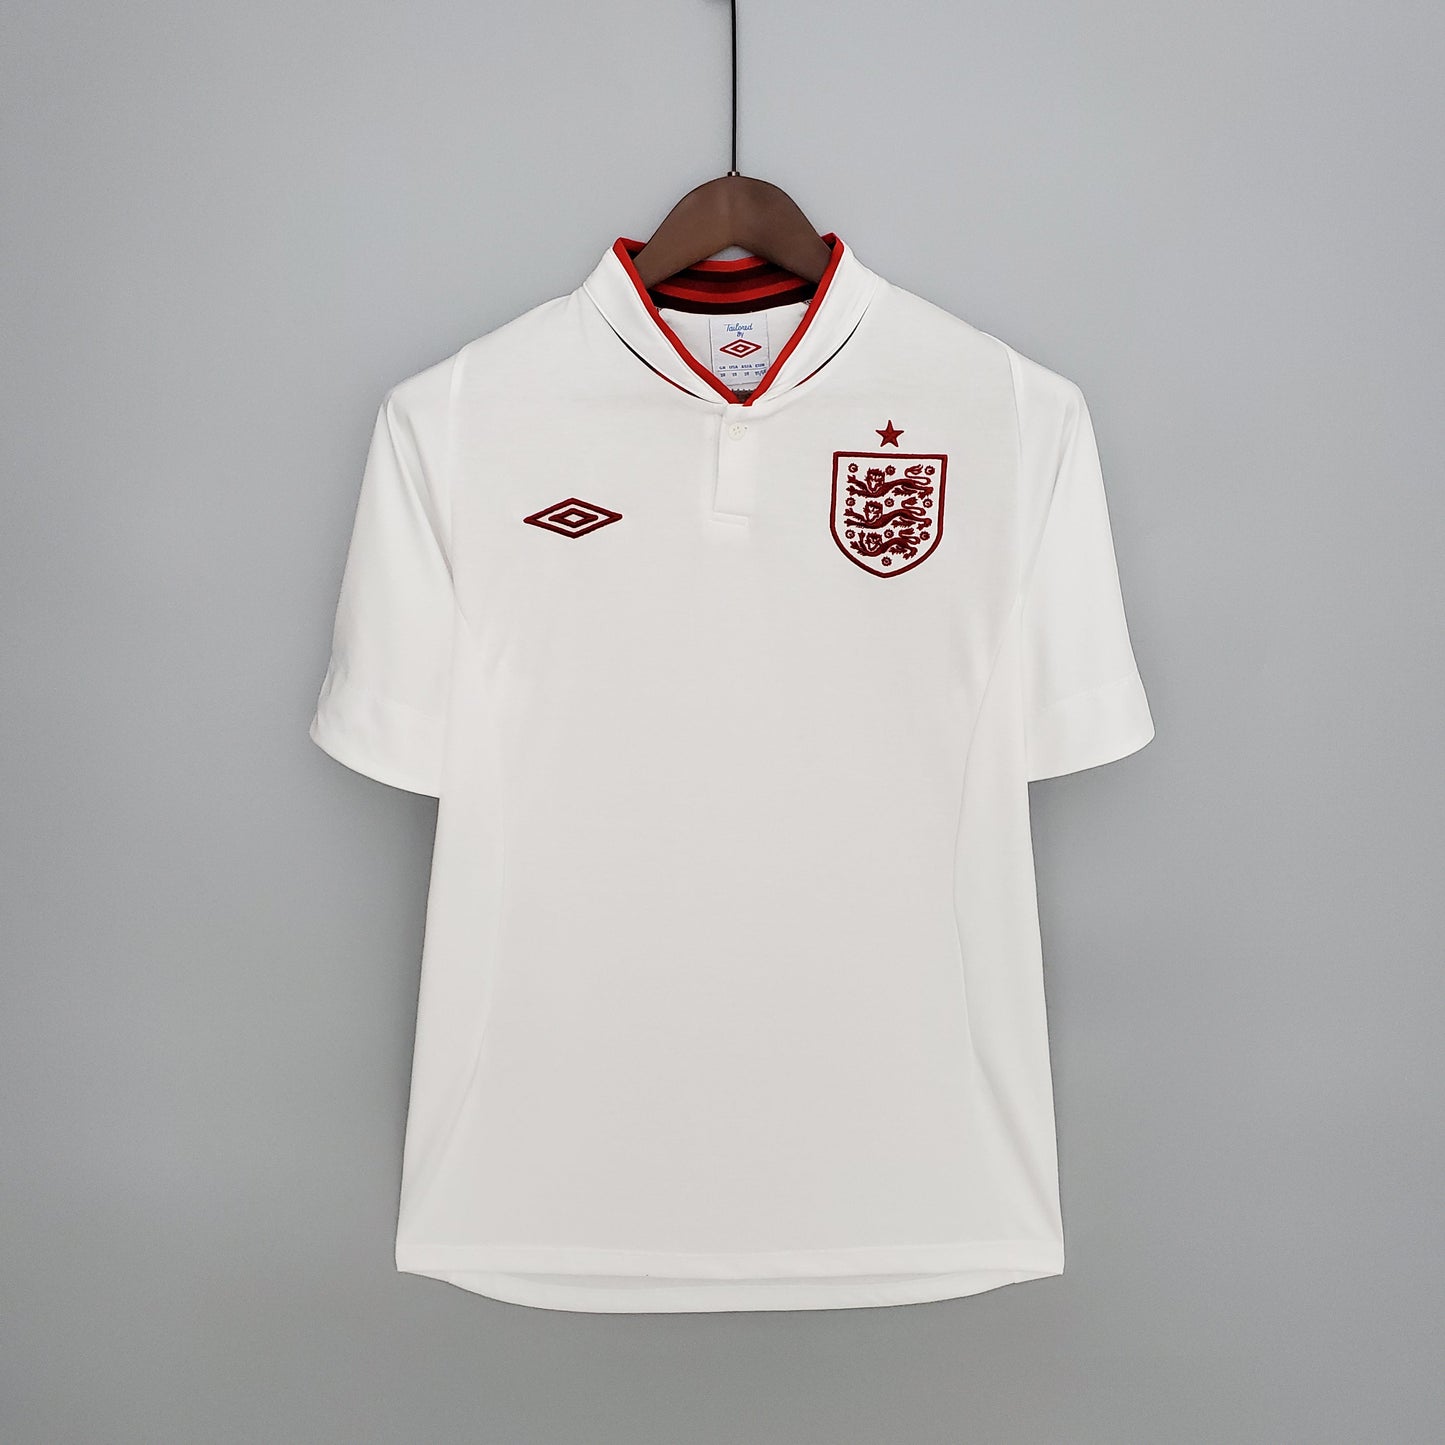 Retro England Home Kit 2012